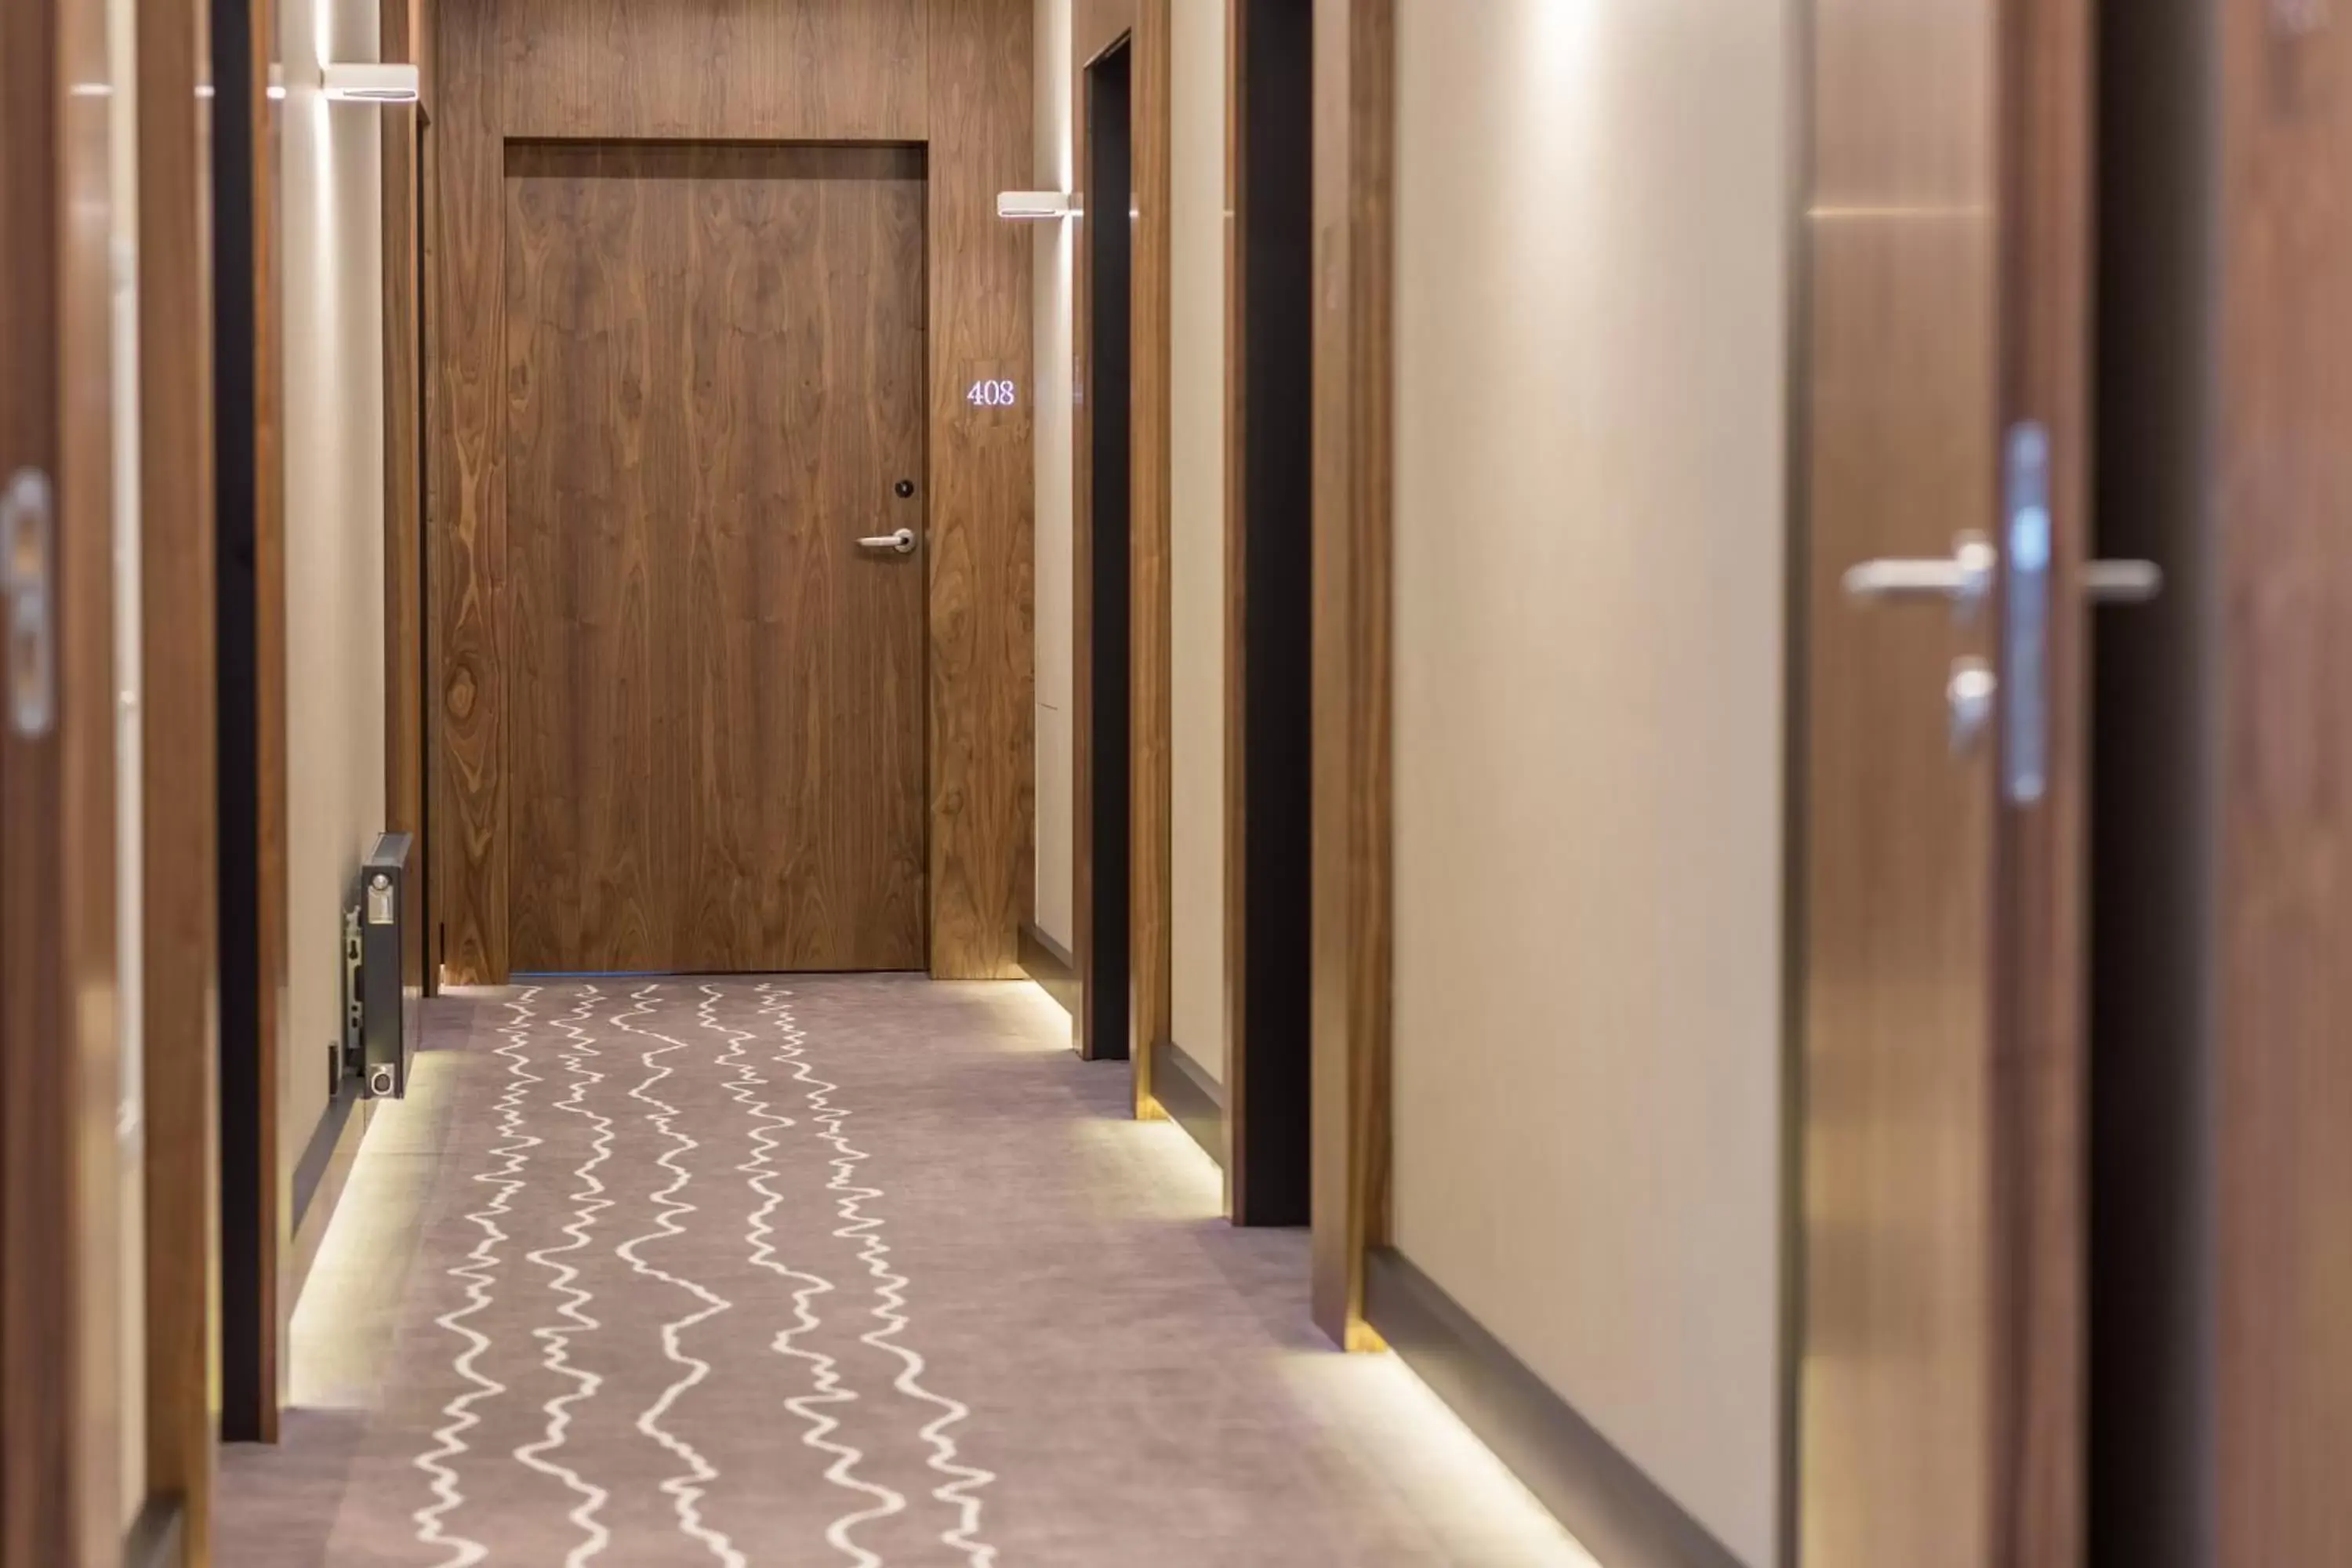 Floor plan in Grand Ascot Hotel